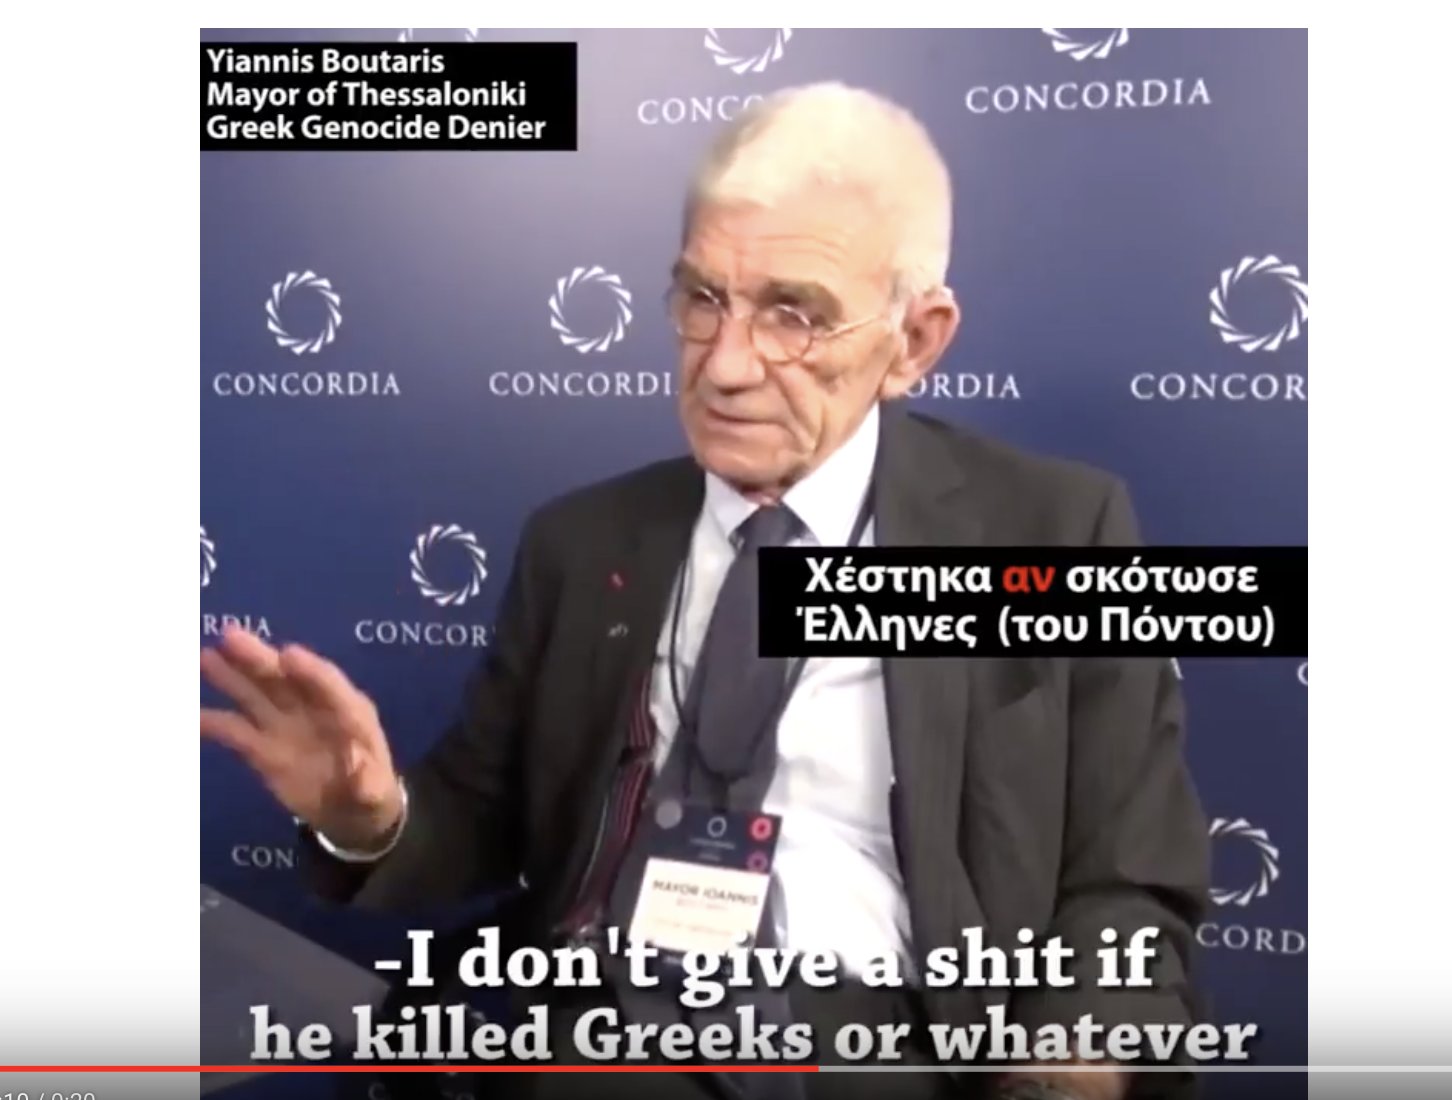 Μπουτάρης: Χέστηκα αν σκότωσε Έλληνες ο Κεμάλ. ΑΠΟΤΕΛΕΙΩΣΤΕ ΤΟΝ ΠΑΛΙΟ-ΓΕΡΟ ΠΟΝΤΙΟΙ !!!